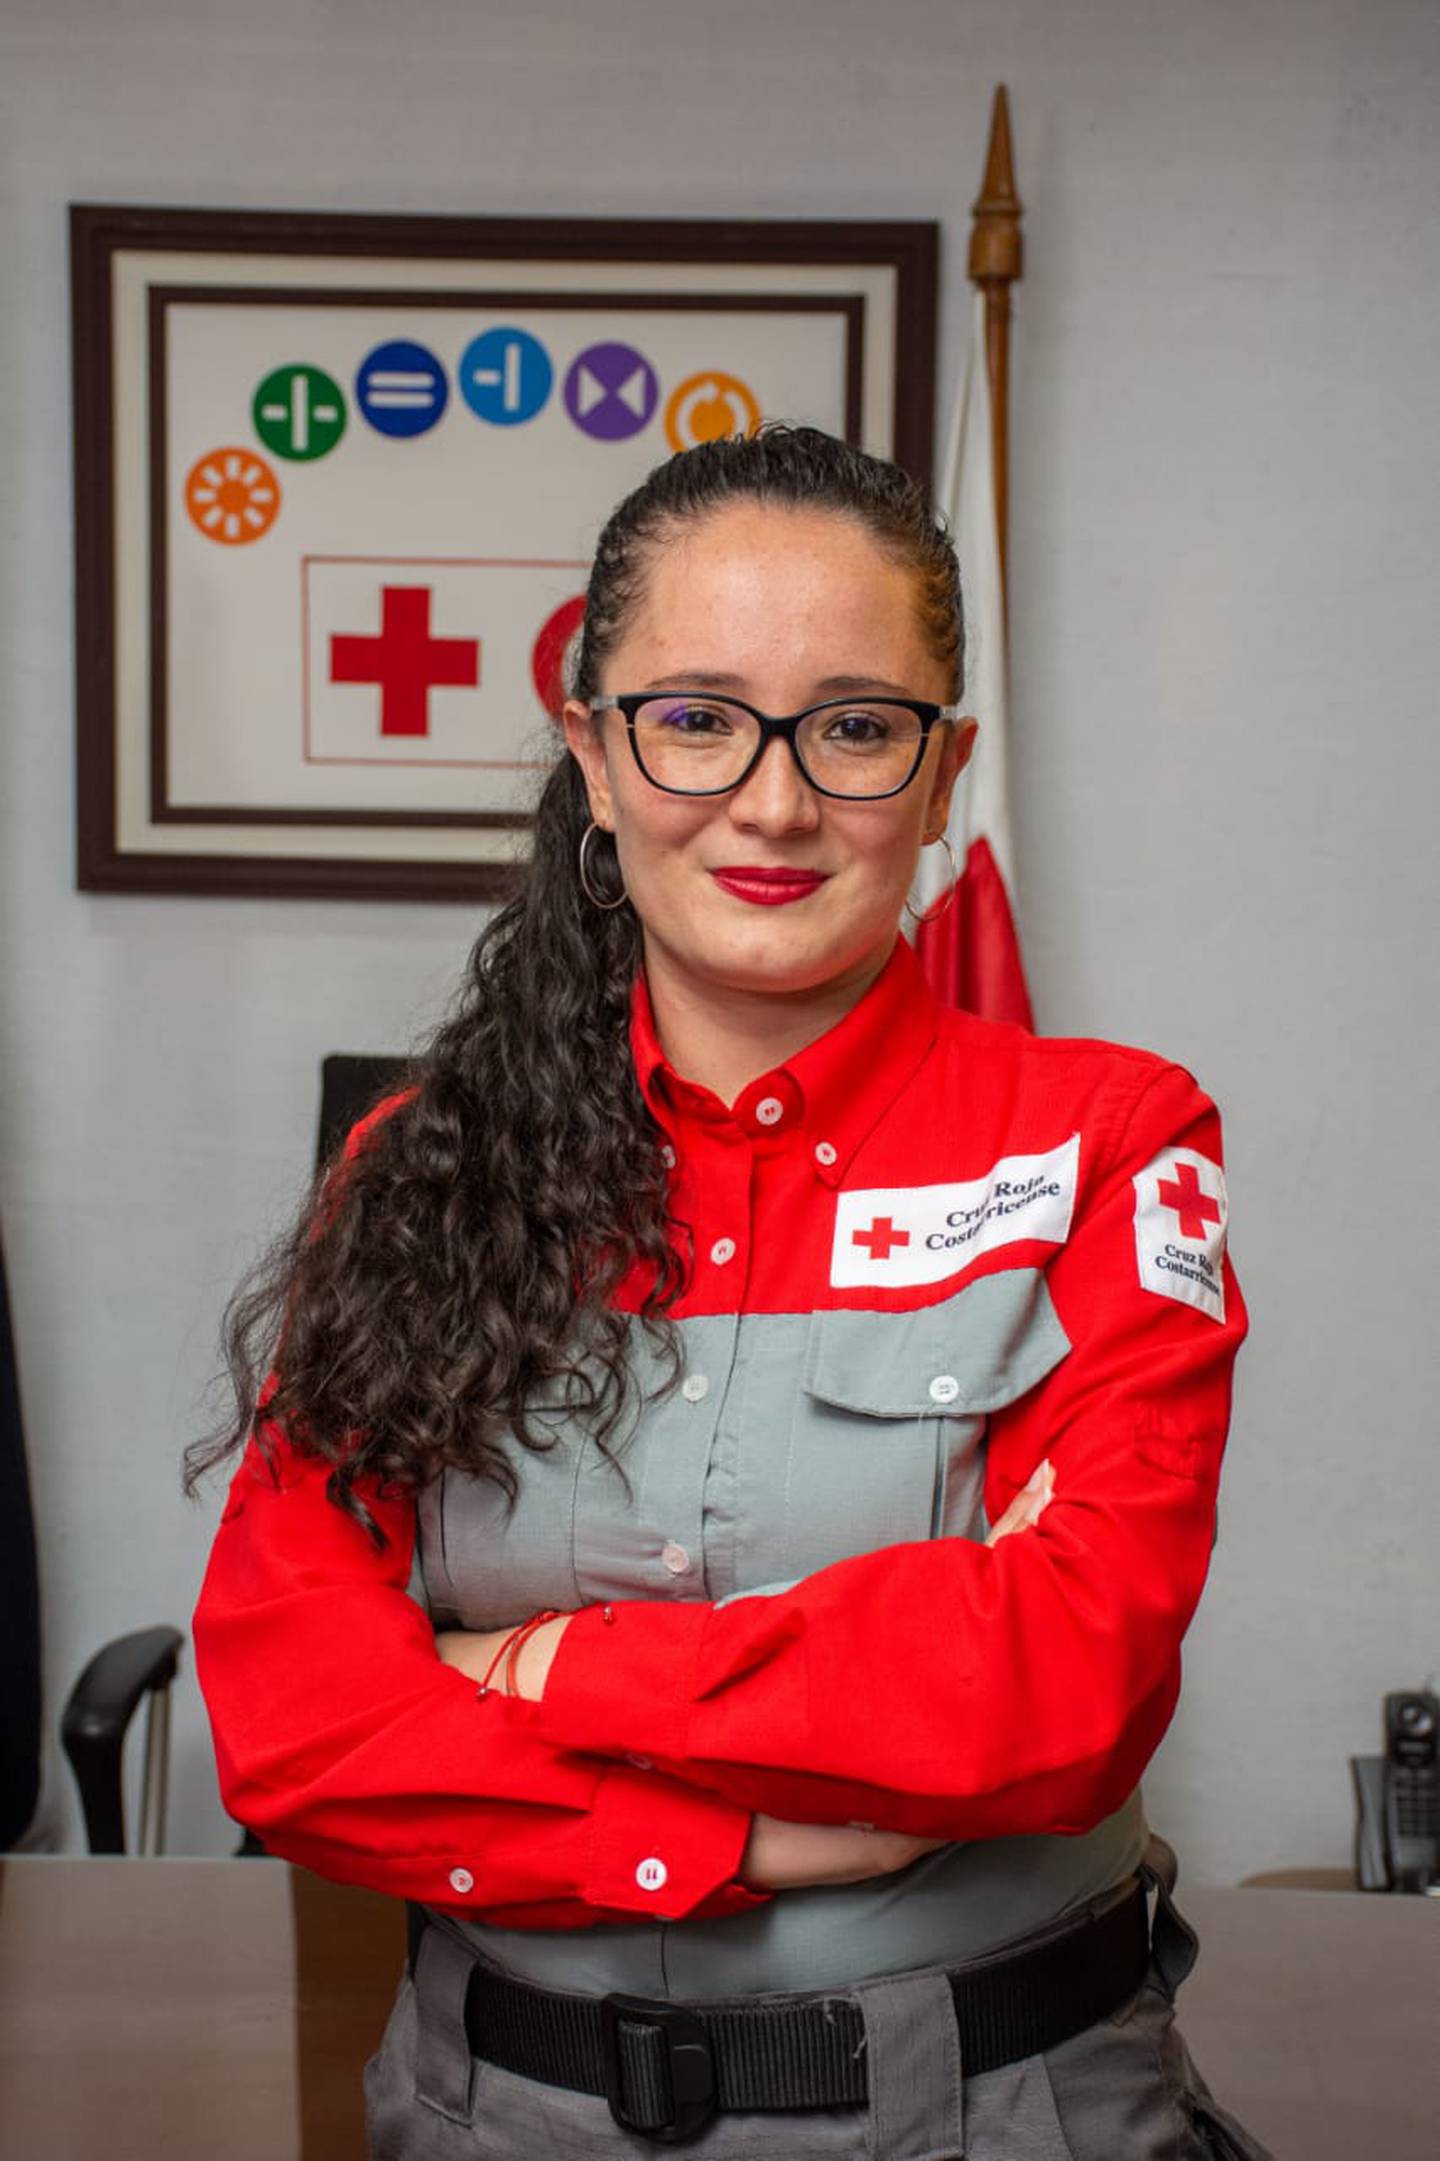 Dyanne Marenco González, cruzrojista voluintaria desde los 15 años, es la primera mujer, en los 136 años que tiene de existir en Costa Rica la Cruz Roja, que es nombrada presidenta de la institución. En la foto con doña Betty Trejos Guerrero, la abuelita quien también es voluntaria